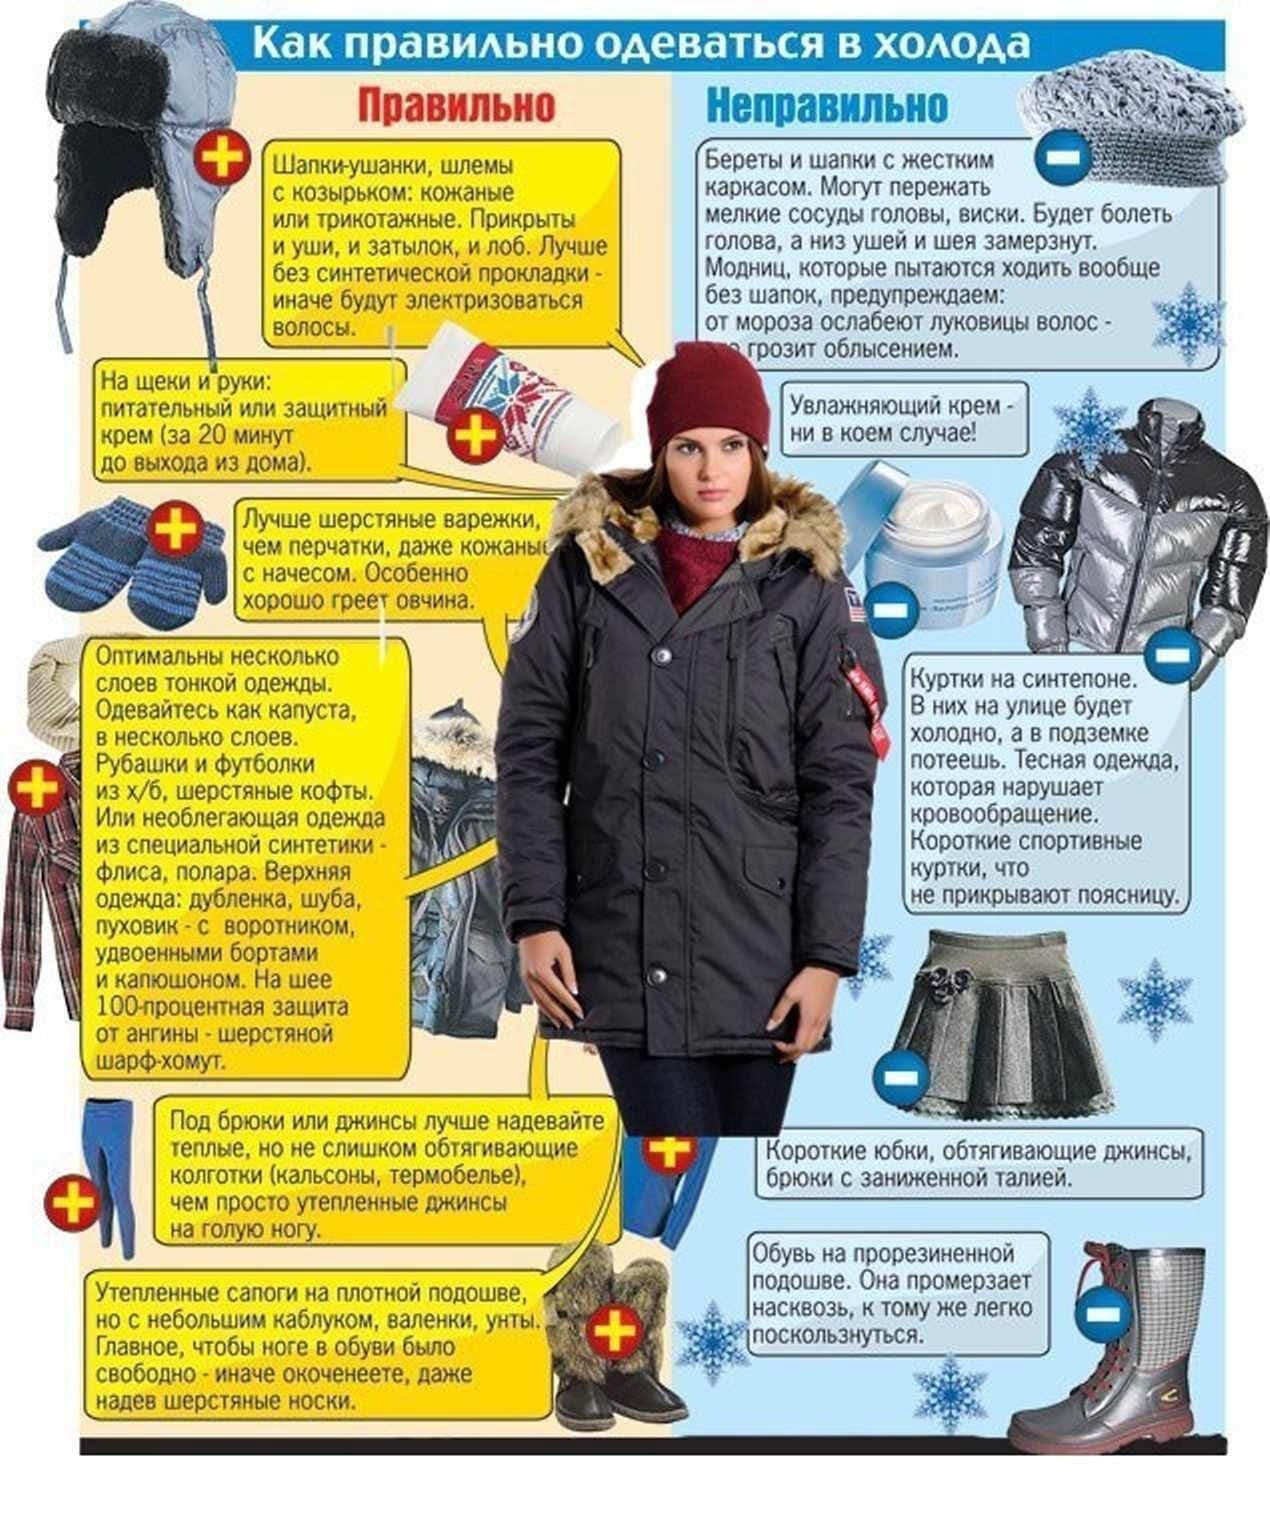 8 градусов что одеть. Правильная одежда зимой. КВК правилтео одеватся. Как правильно одеваться зимой. Одеваться зимой в Мороз.